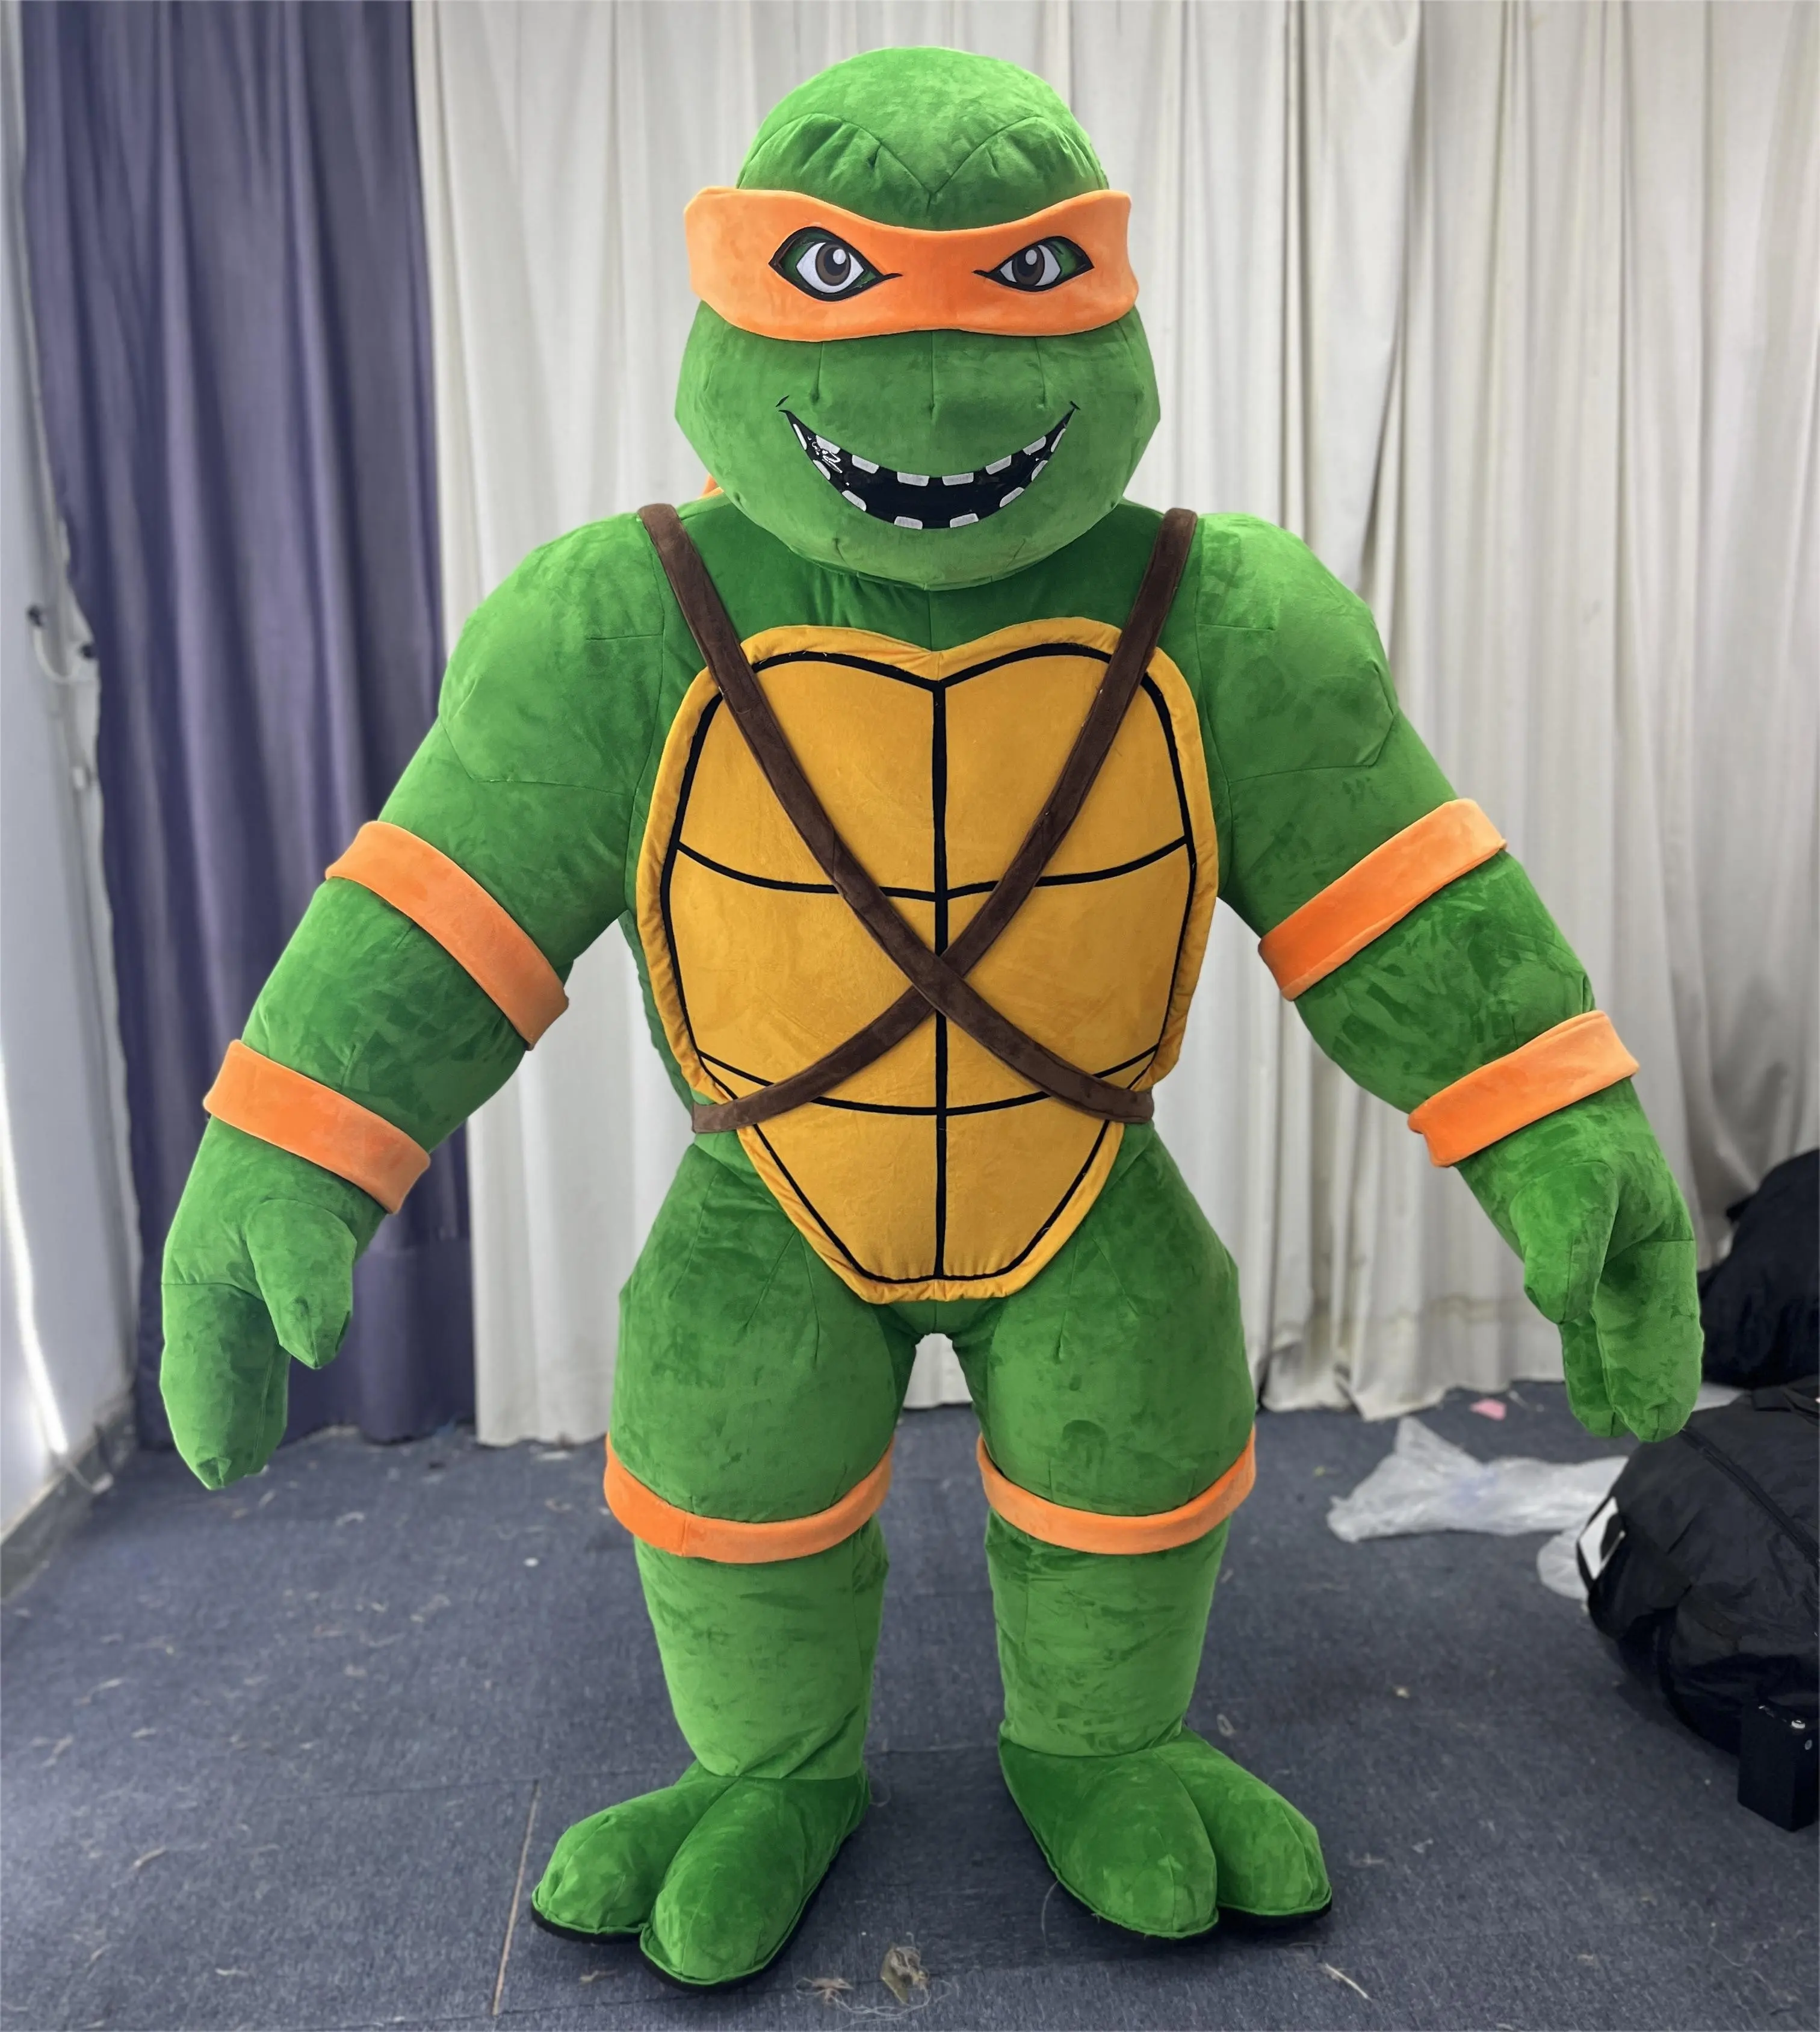 Funtoys quantité minimale de commande 1 pièce personnalisé en peluche gonflable mascotte personnage de dessin animé mascotte Ninja tortue gonflable mascotte costume